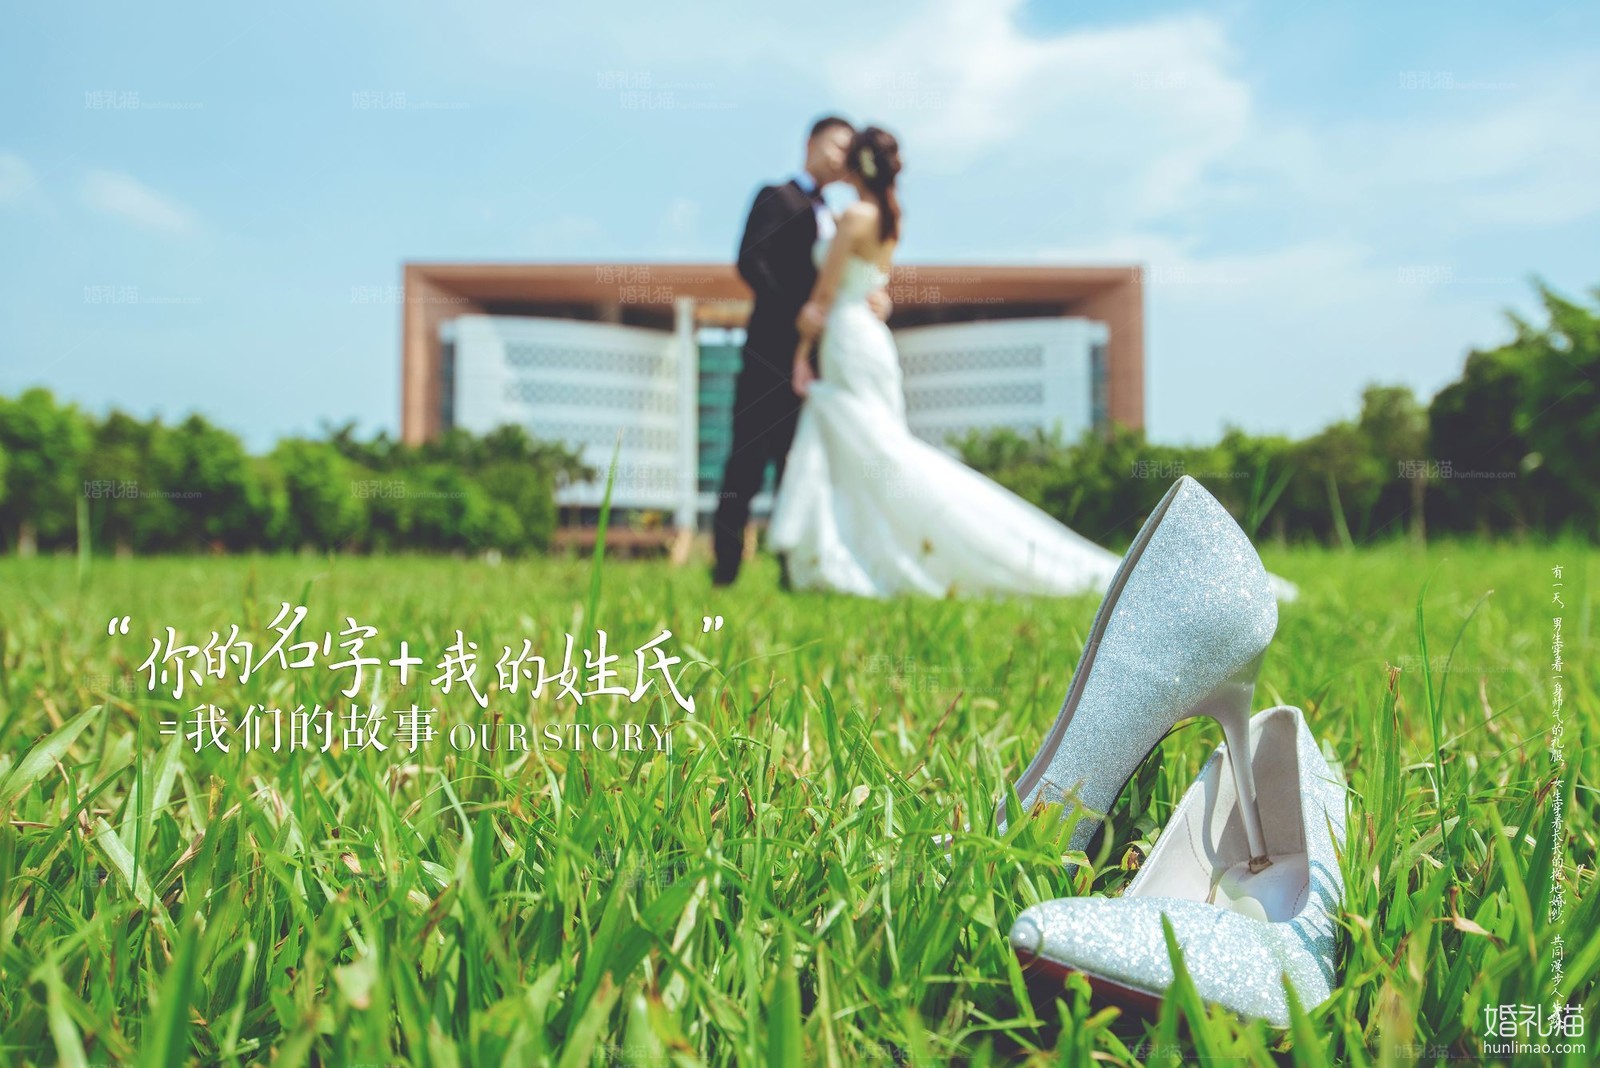 2018年11月广州婚纱照图片,,云浮婚纱照,婚纱照图片